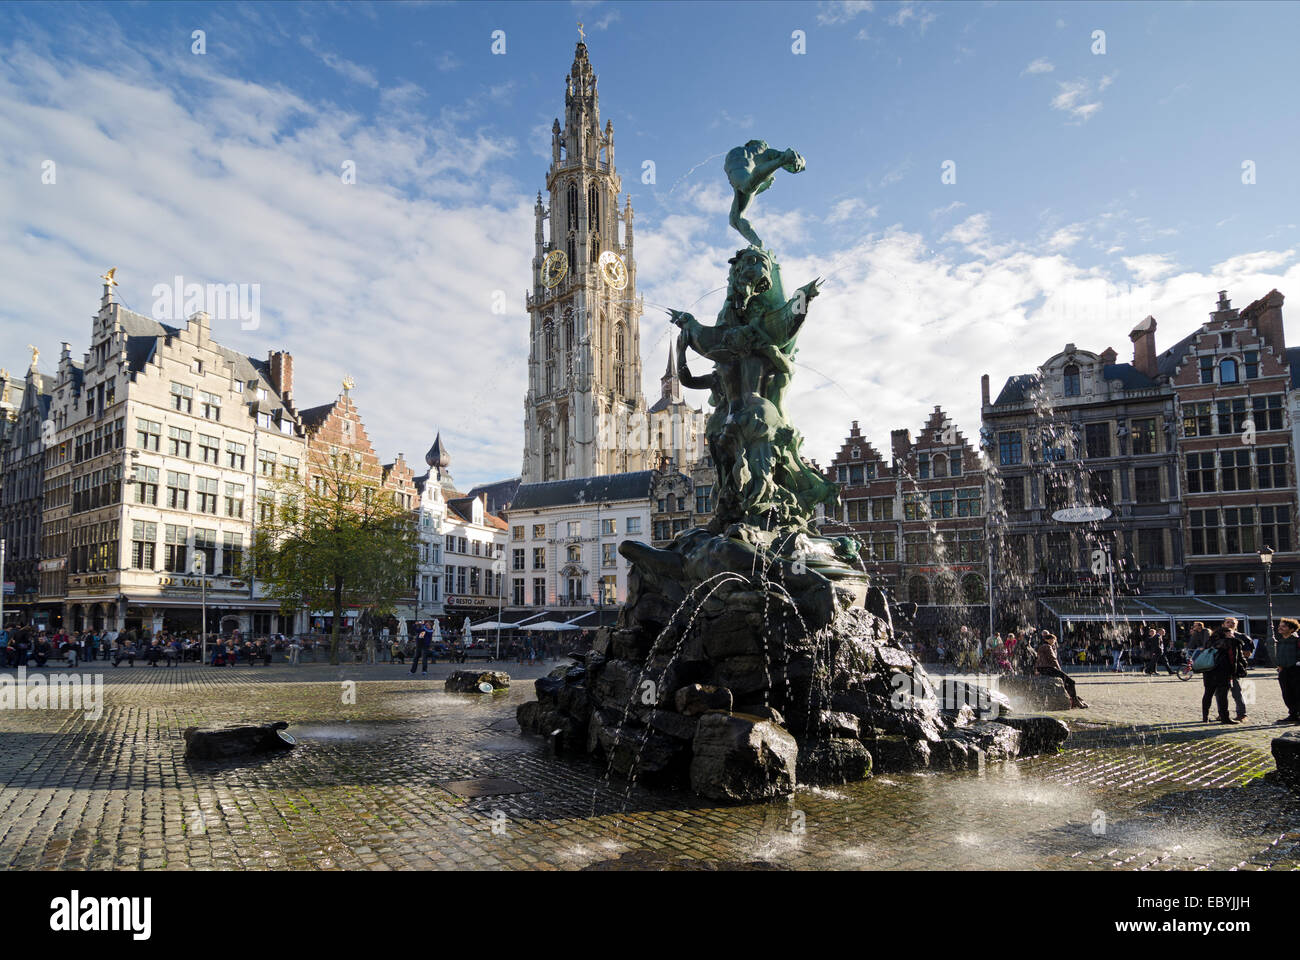 Anversa, Belgio - 26 ottobre: la Grand Place con la statua di Brabo, gettando il gigante la mano nel fiume Schelda e th Foto Stock